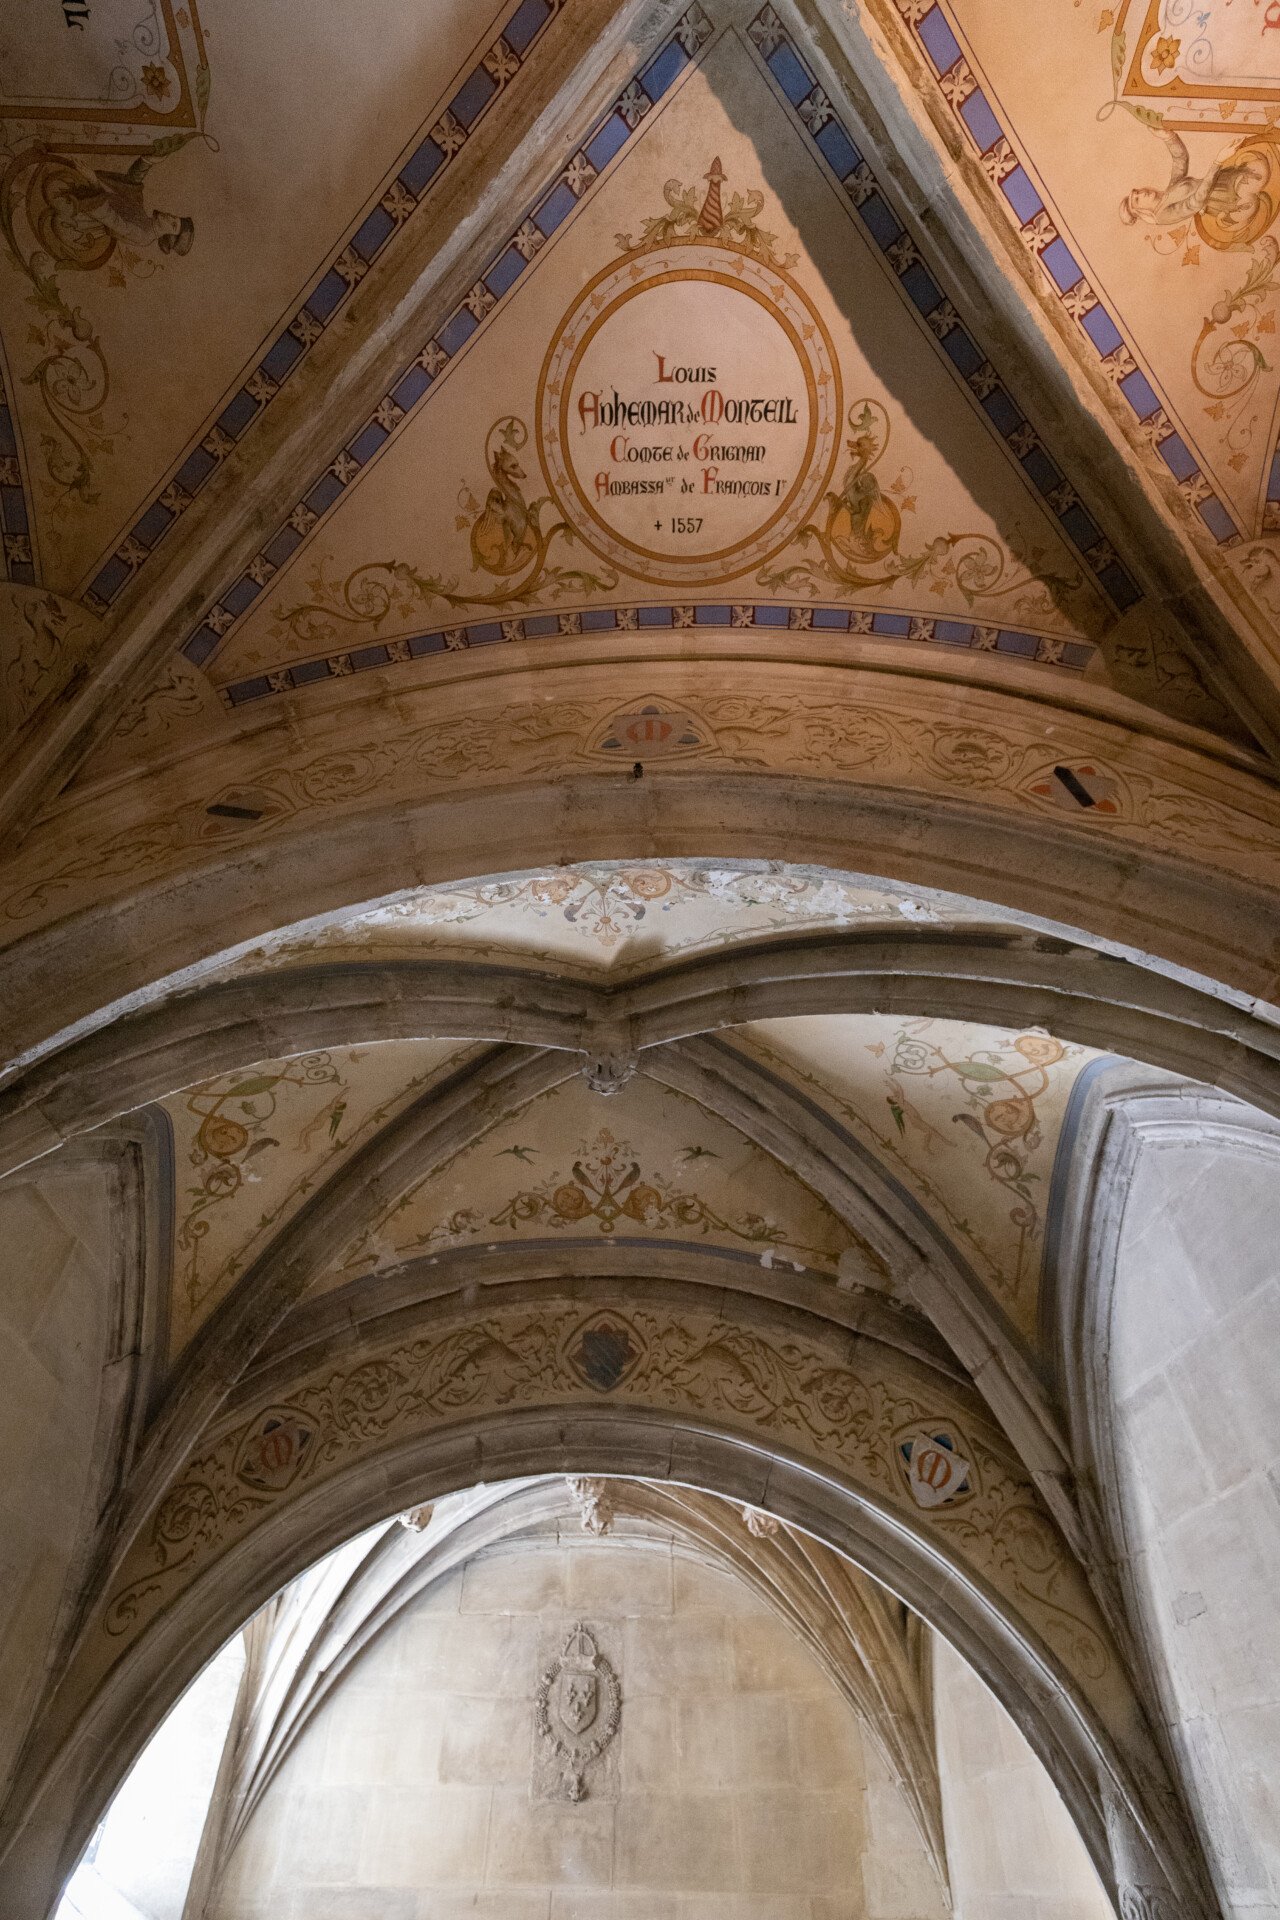 Plafond vouté en ogive au château de Grignan. On peut observer des décorations peinte dessus, nottamment un médaillon portant les mentions de l'ancien compte de Grignan, Louis Adhémar de Monteil